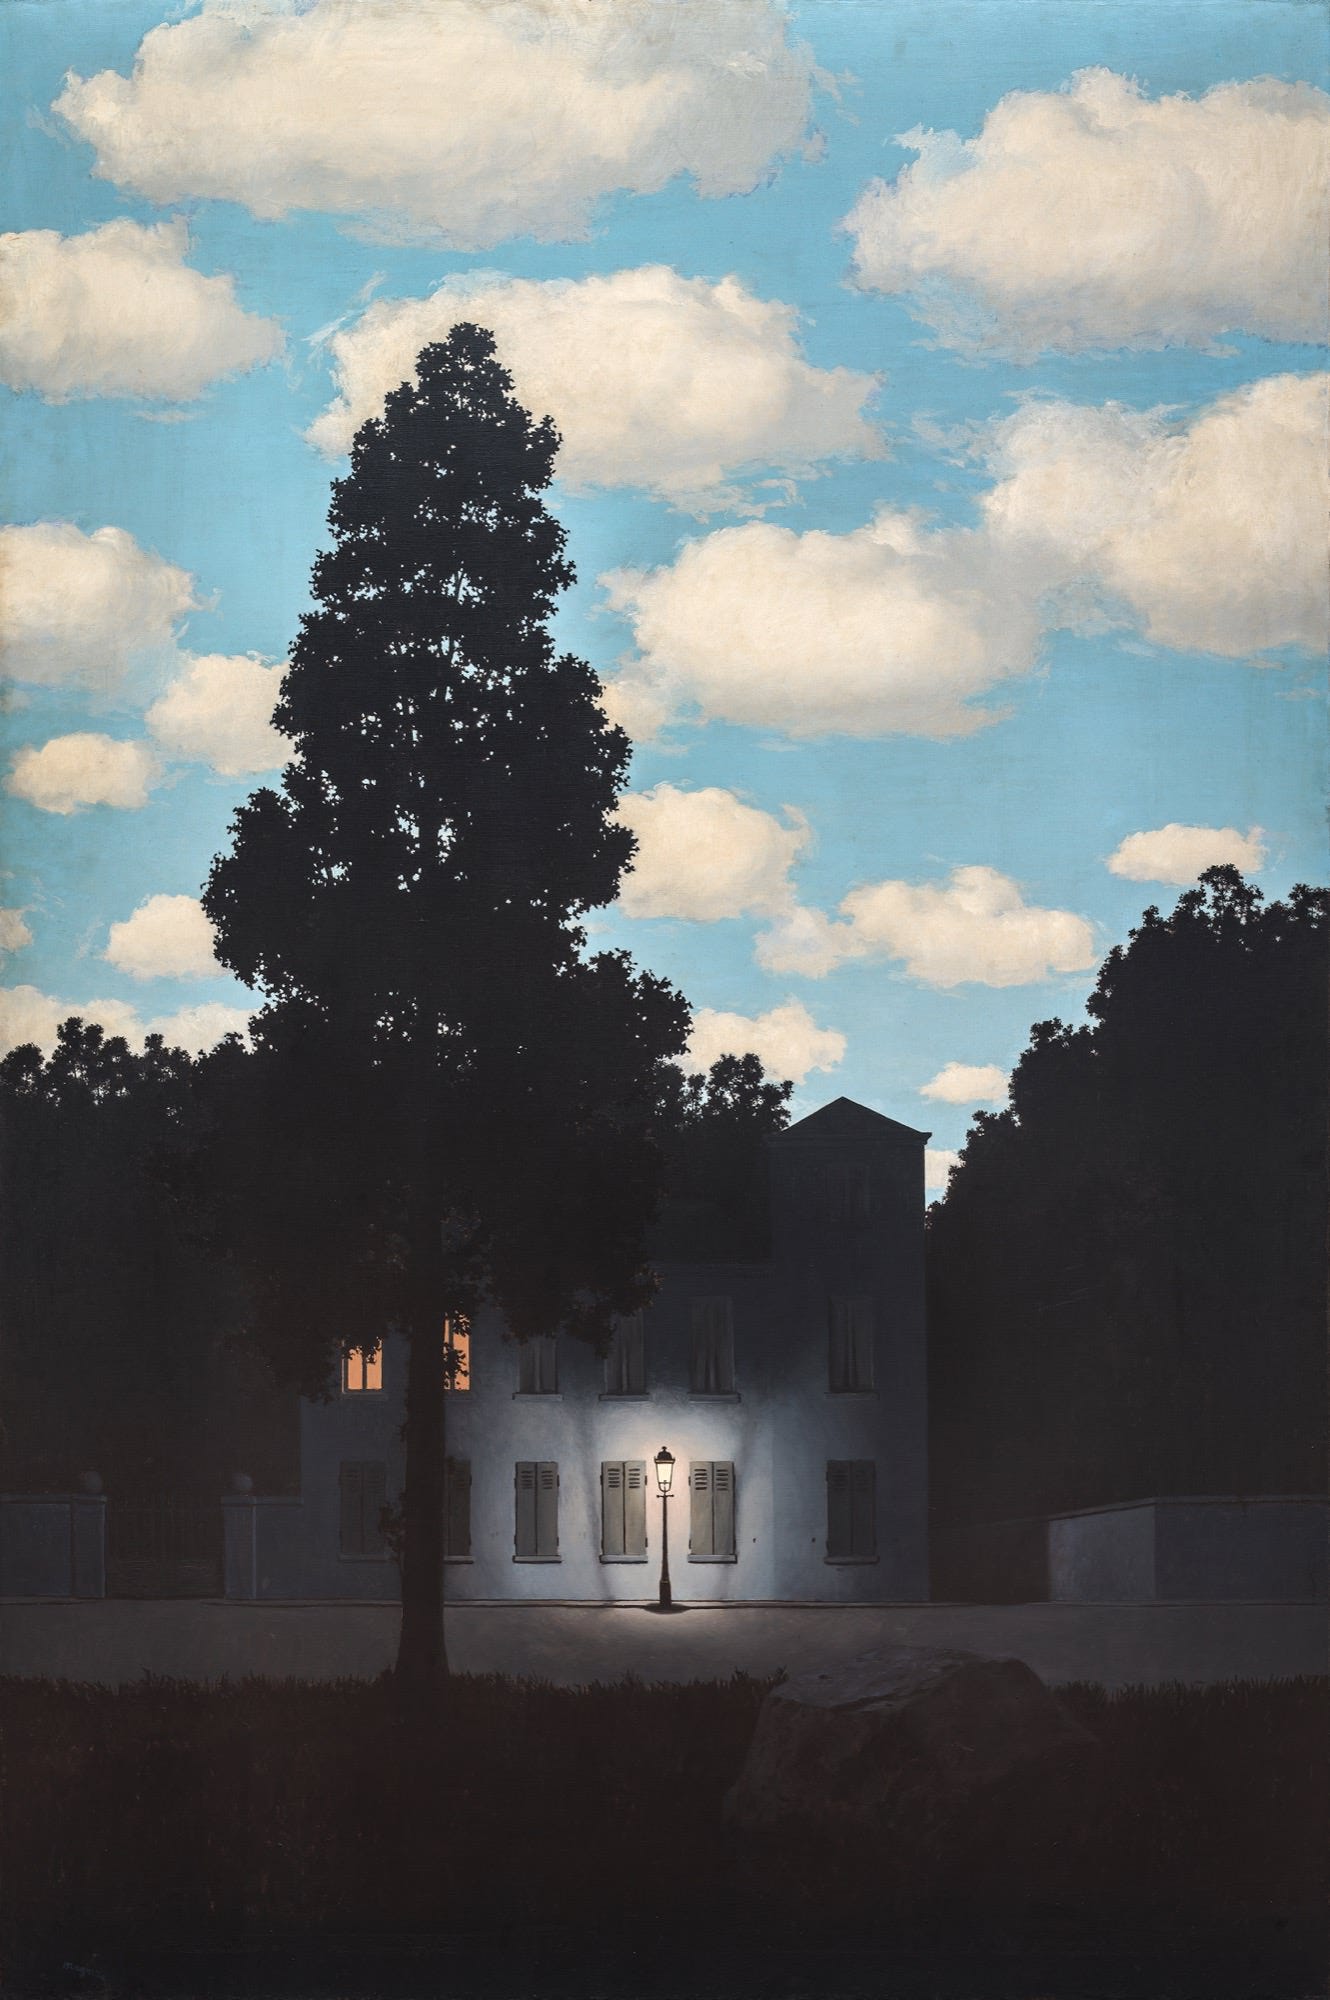 Esta pintura mostra uma casa com uma luz na frente, cercada por árvores e um céu azul cheio de nuvens brancas. A casa está situada em um ambiente externo e há uma luz de rua em um poste em frente a ela. A árvore mais próxima da casa é alta contra o pano de fundo do céu, com seus galhos alcançando as nuvens brancas e fofas acima.